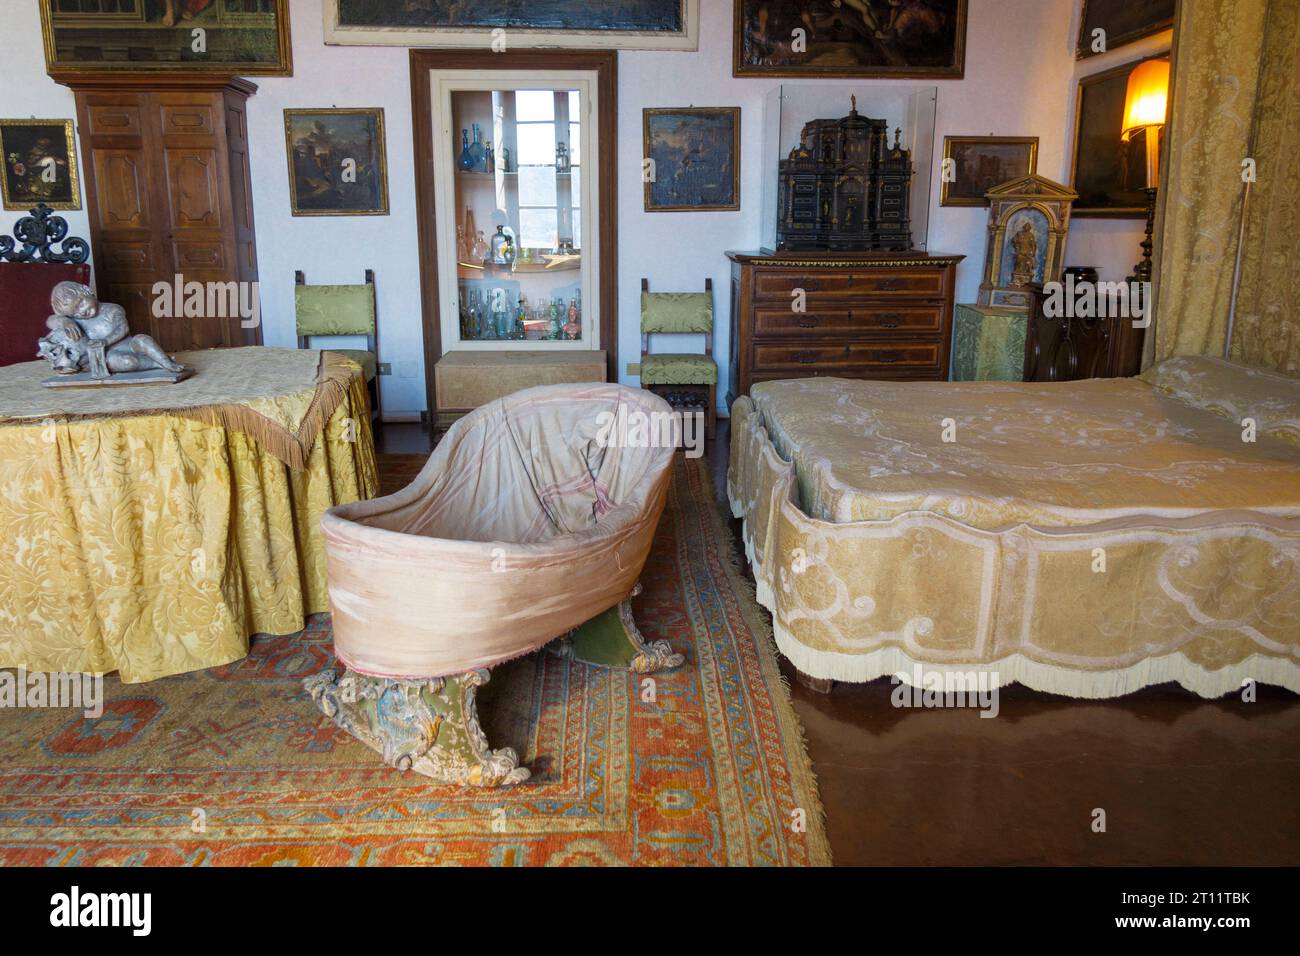 Palazzo Borromeo palace interior at Isola Bella, Lake Maggiore, Lombardy, Italy, Europe Stock Photo